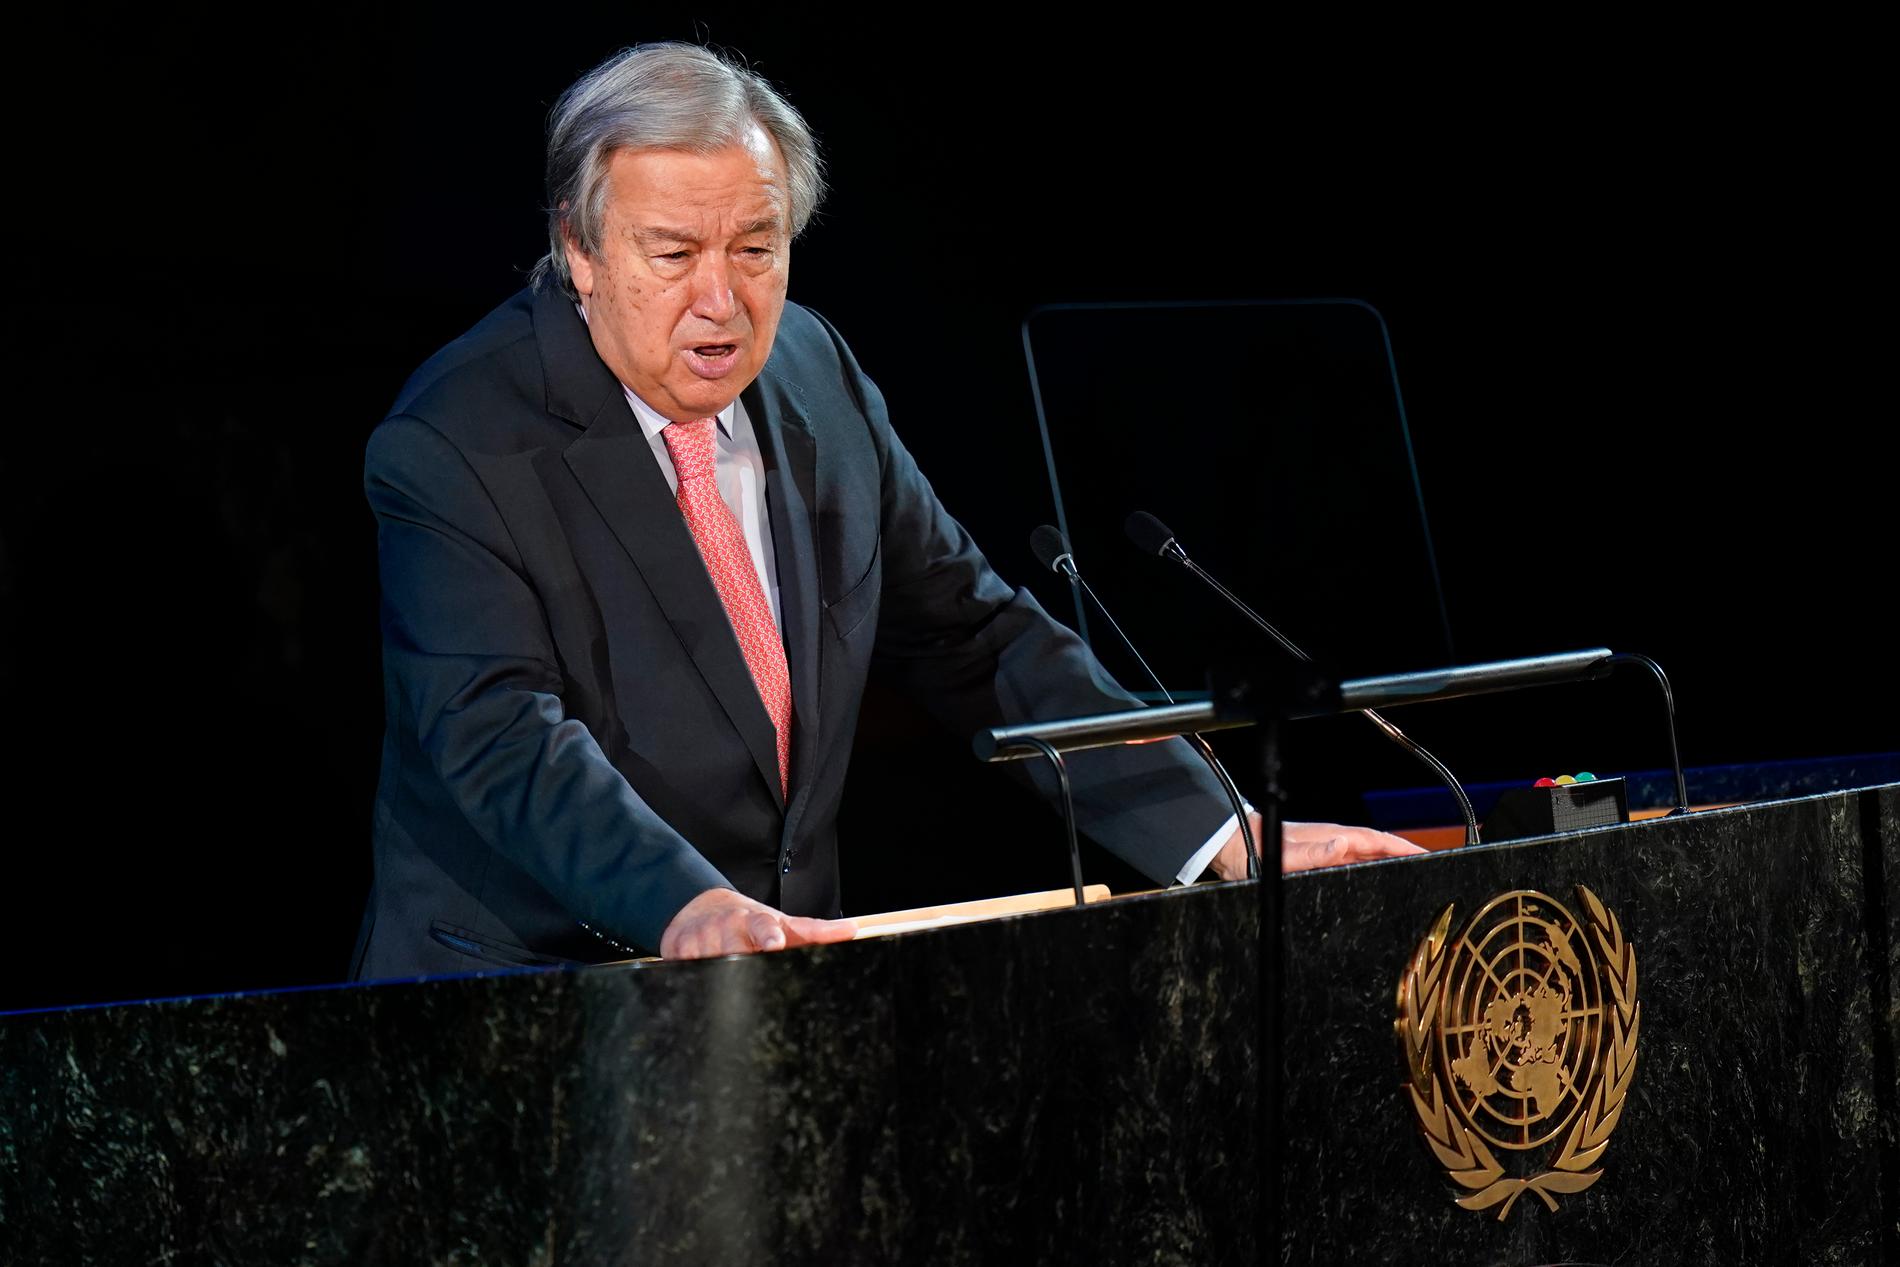 ”Vår värld står i brand”, sa FN:s generalsekreterare António Guterres i sitt öppningstal.